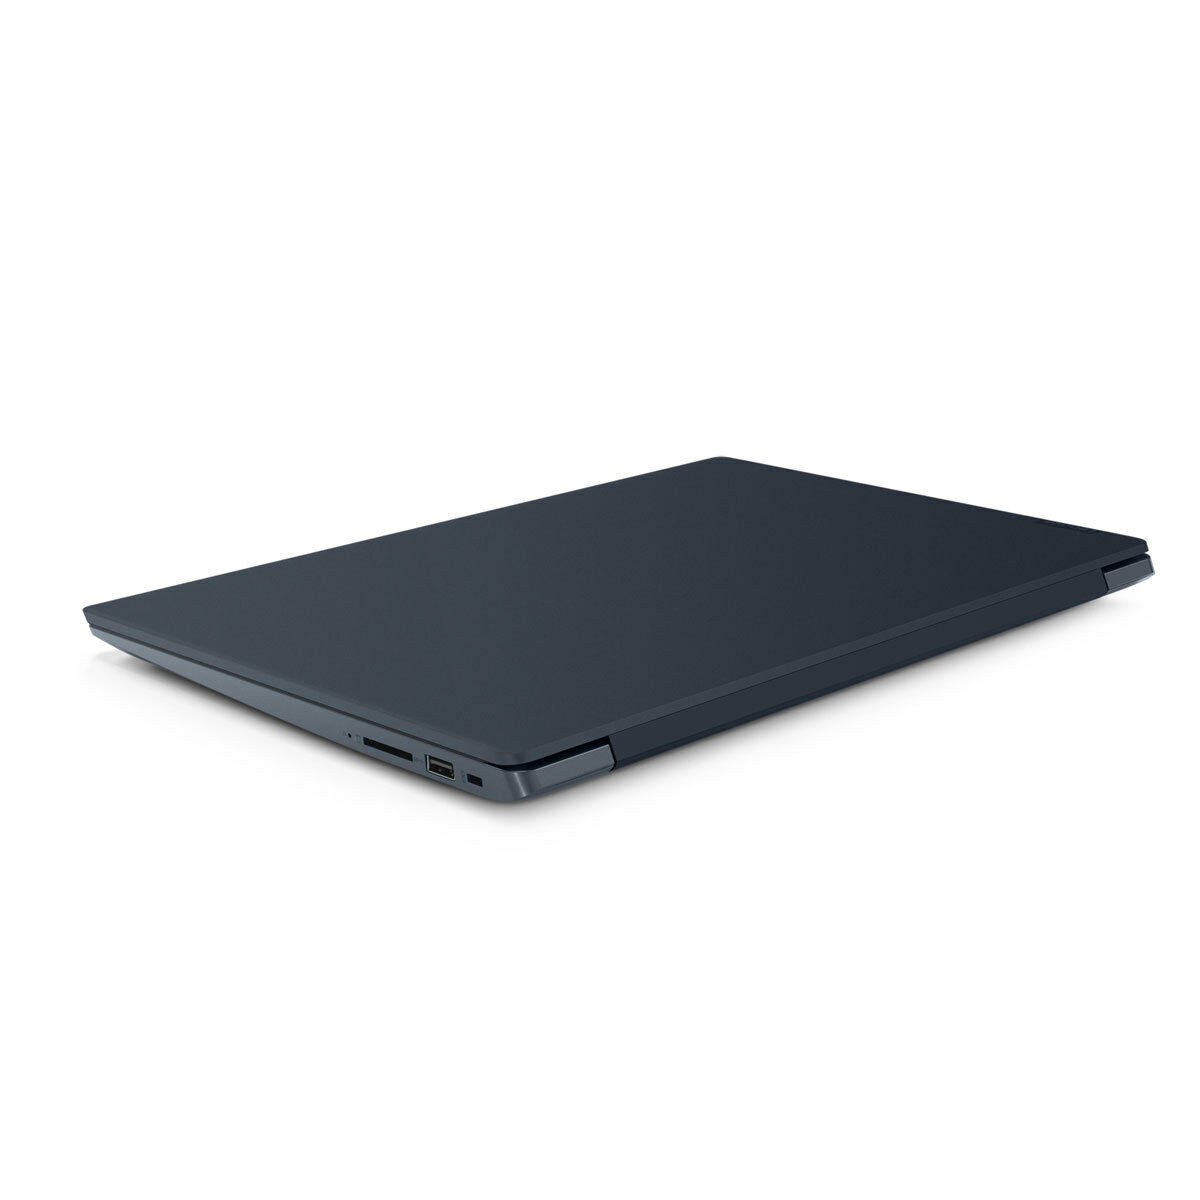 Lenovo IdeaPad 330S-15IKB 81F500N8GE Quad-Core i5-8250U, 8GB,1000GB HDD, W10P